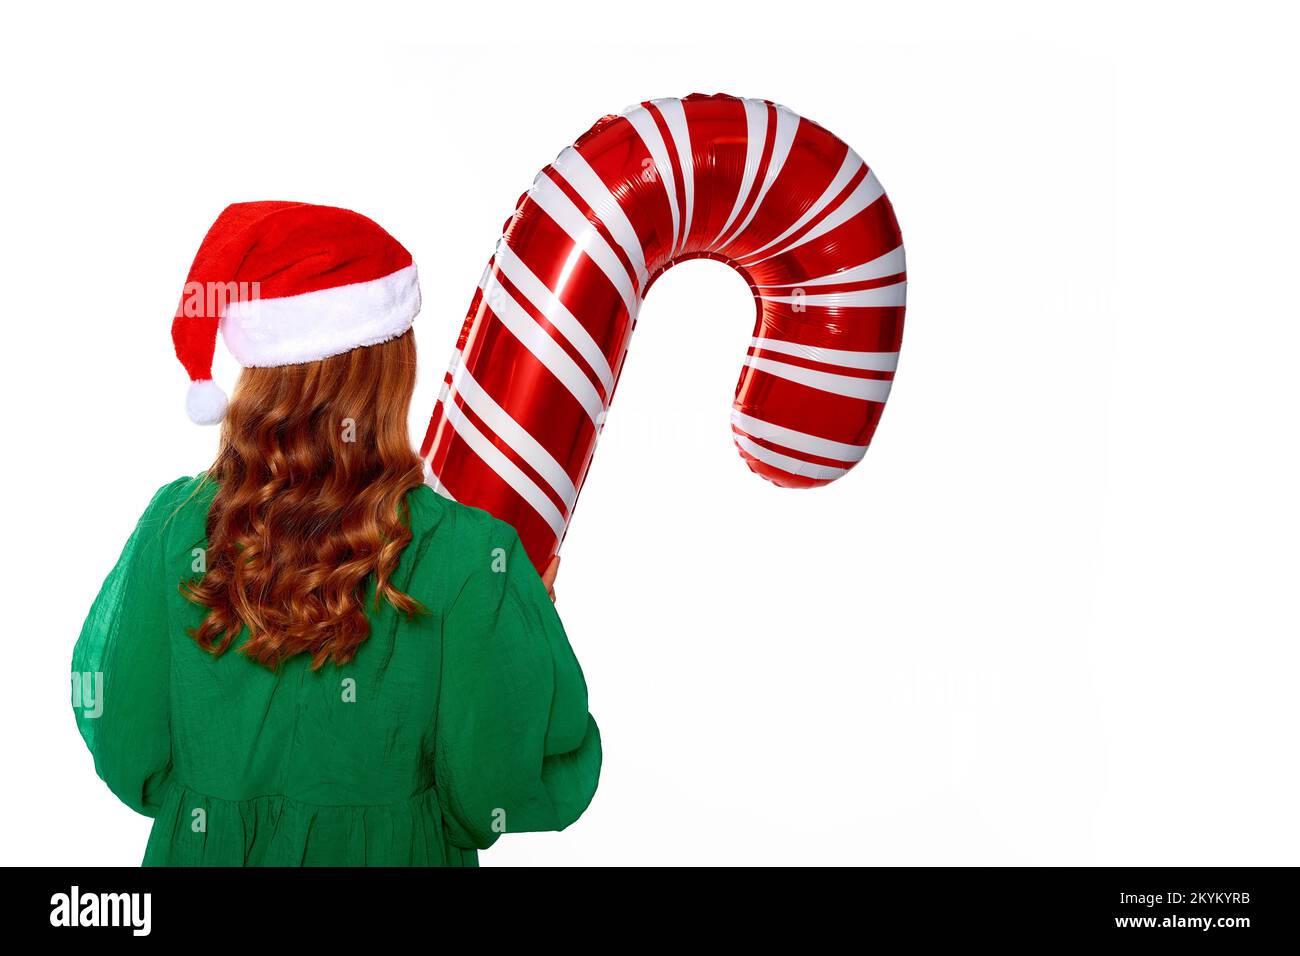 Weihnachtsmädchen hält einen riesigen Zuckerrohr-Ballon in den Händen, trägt ein grünes Kleid, einen weihnachtsmannmütze und rote warme Socken für die Silvesterparty Stockfoto